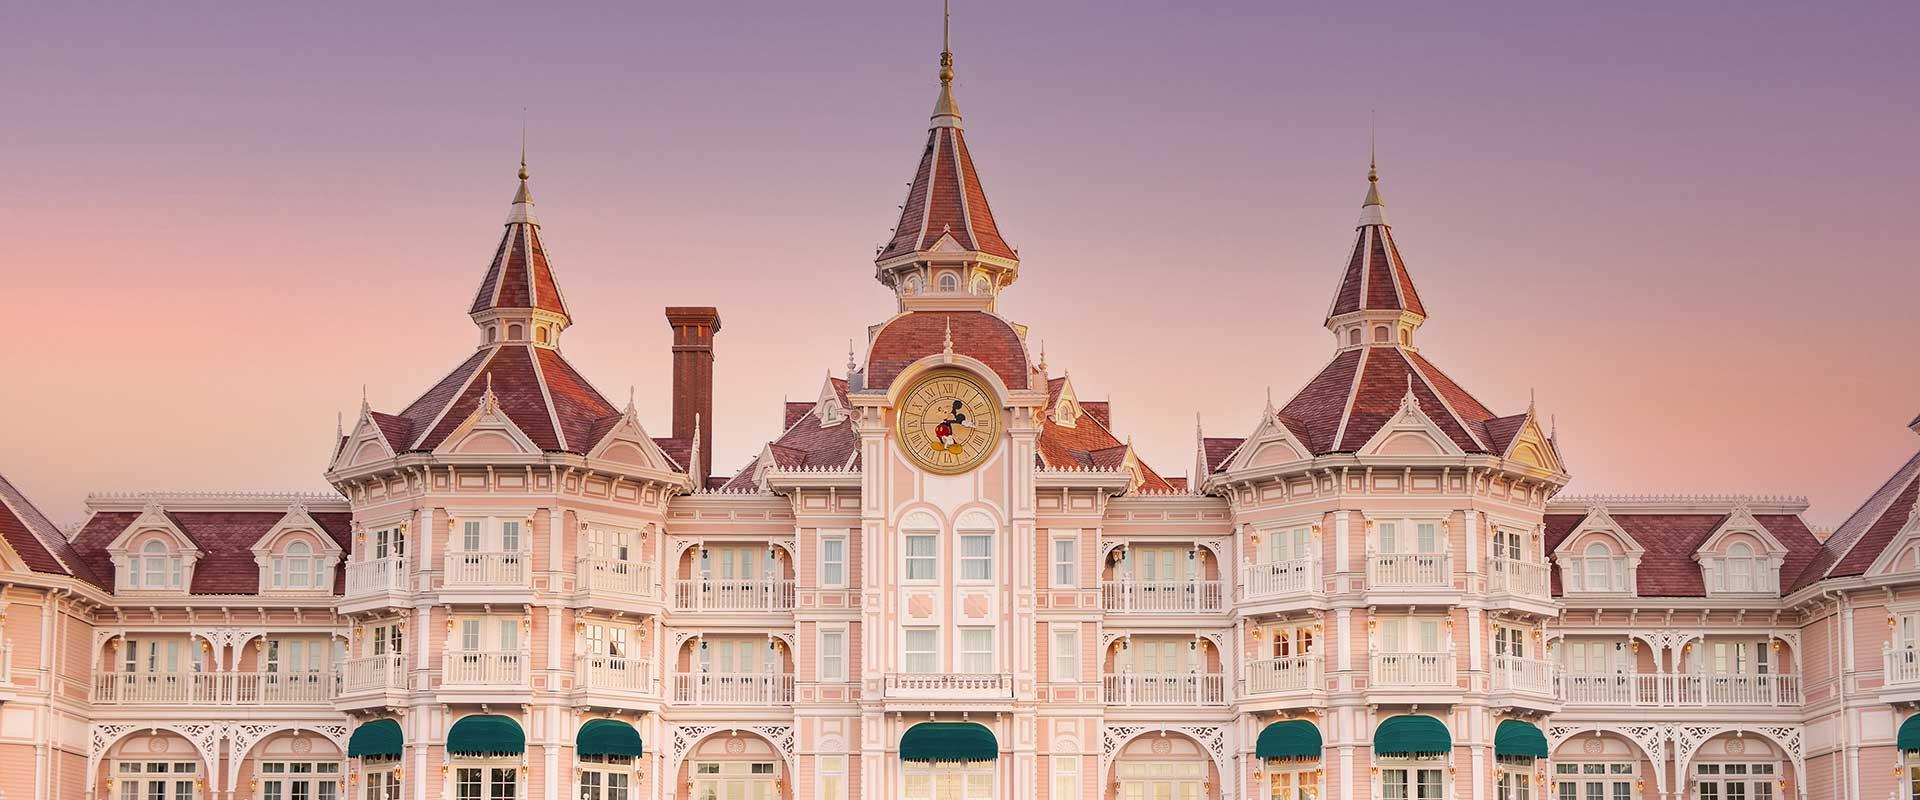 Les 5 meilleurs hôtels de Disney